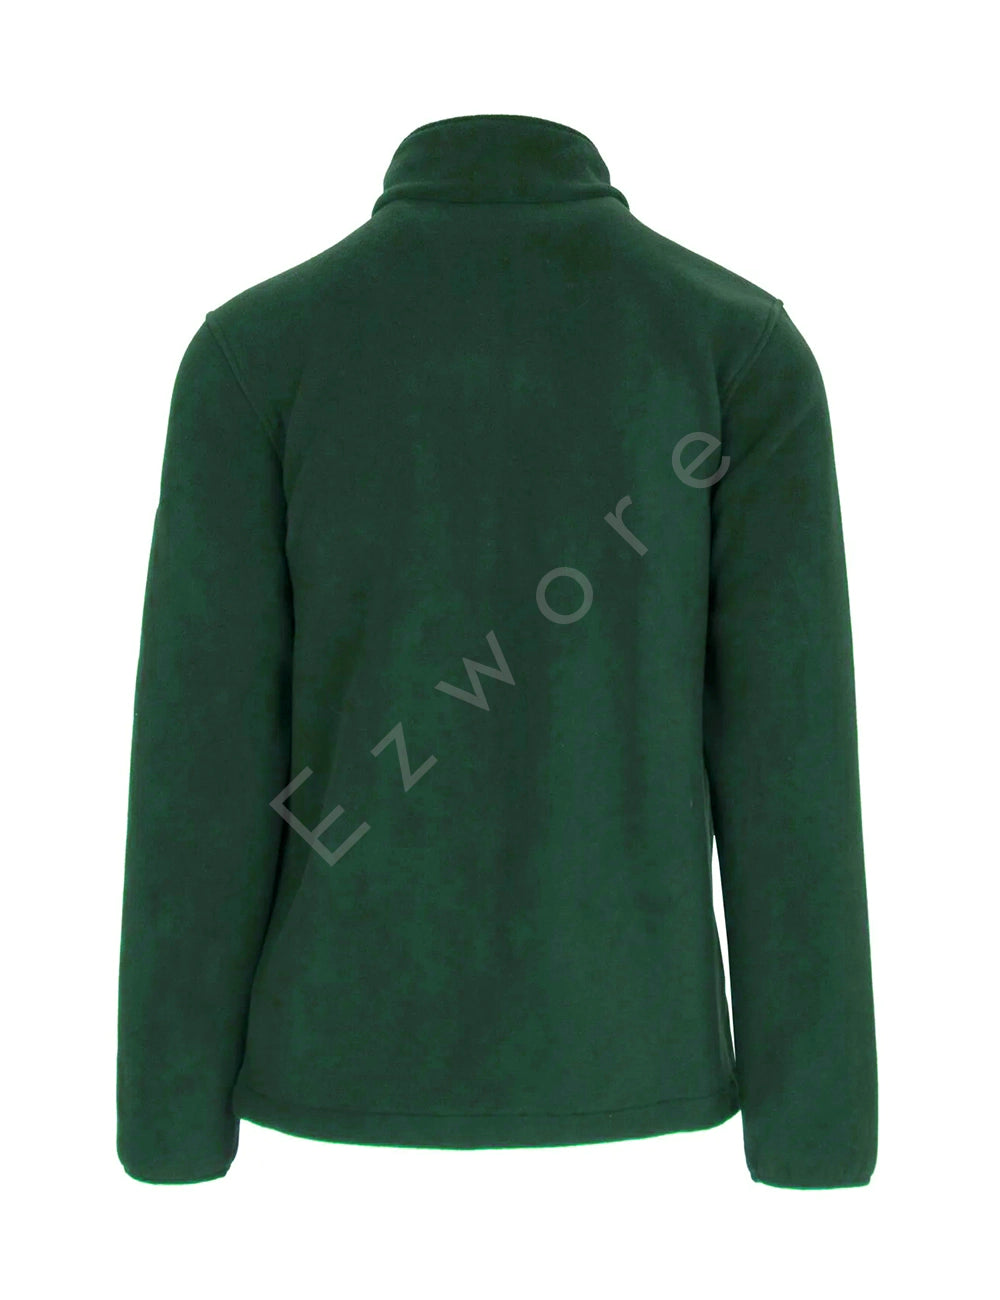 Pareman Melange Green Fleece Jacket